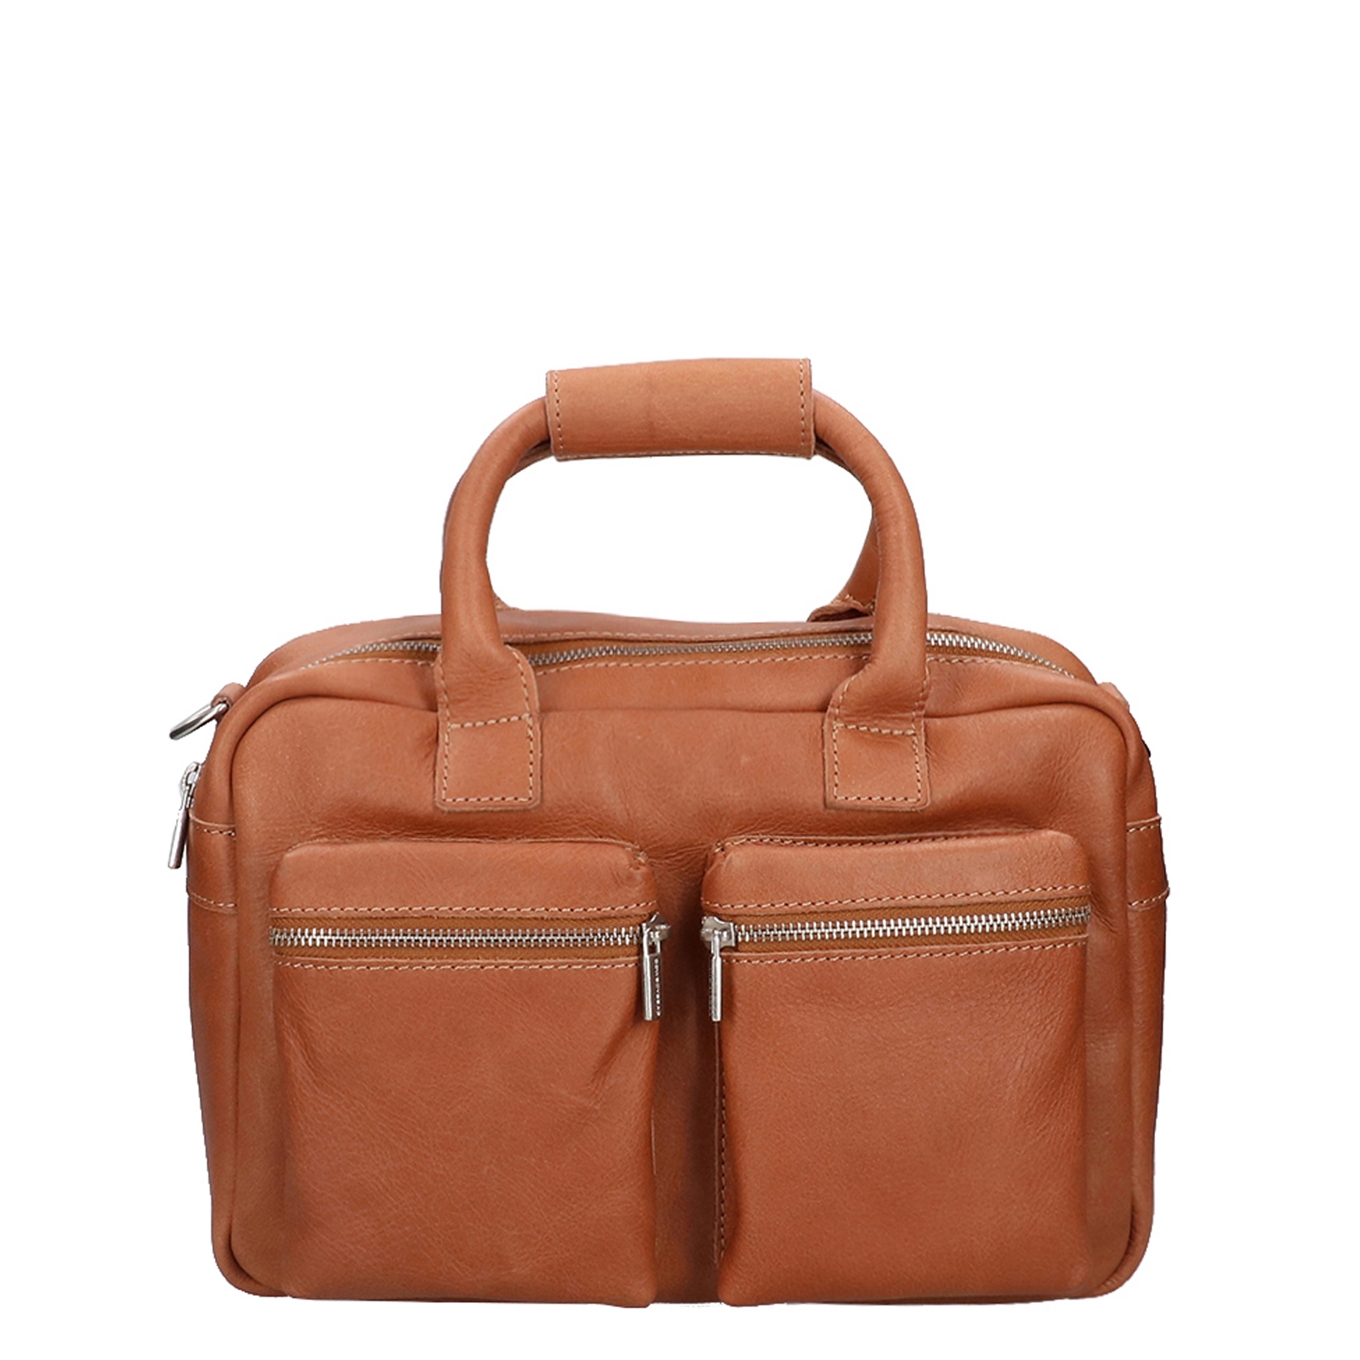 Wat mensen betreft Uluru evenwicht Cowboysbag The Little Bag Schoudertas cognac | Travelbags.nl